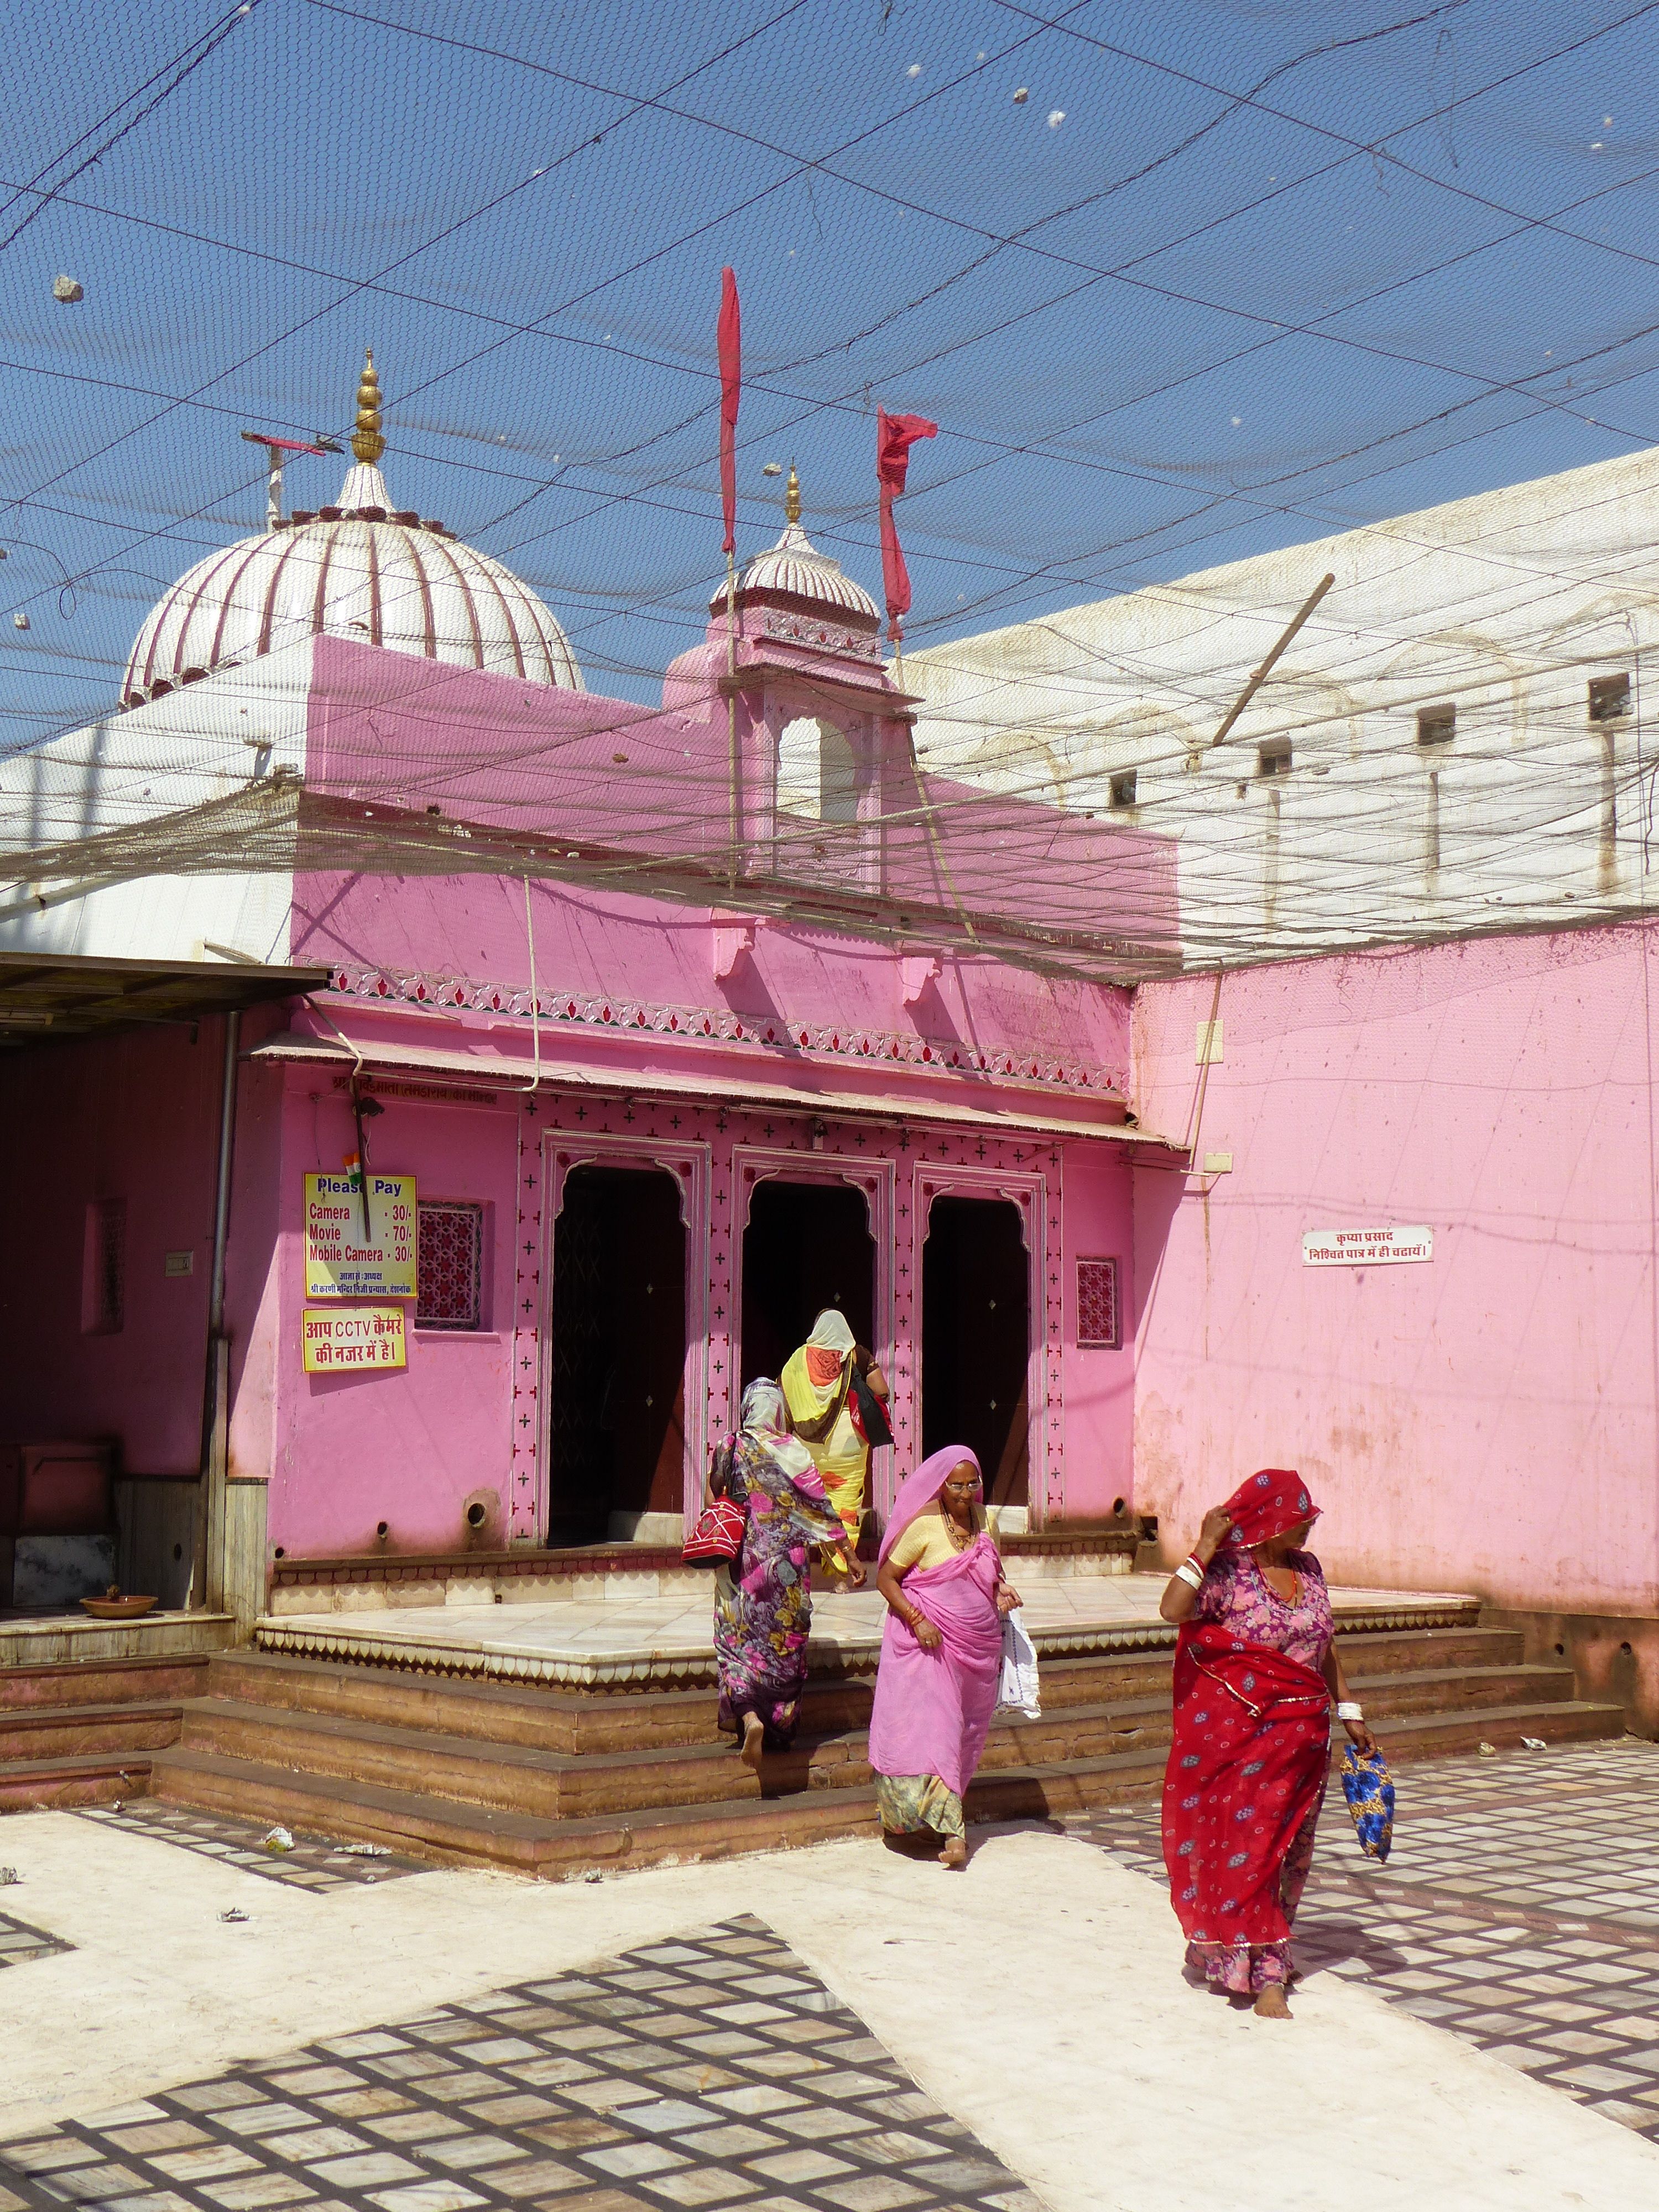 Near Bikaner, Karni Mata Rat Temple